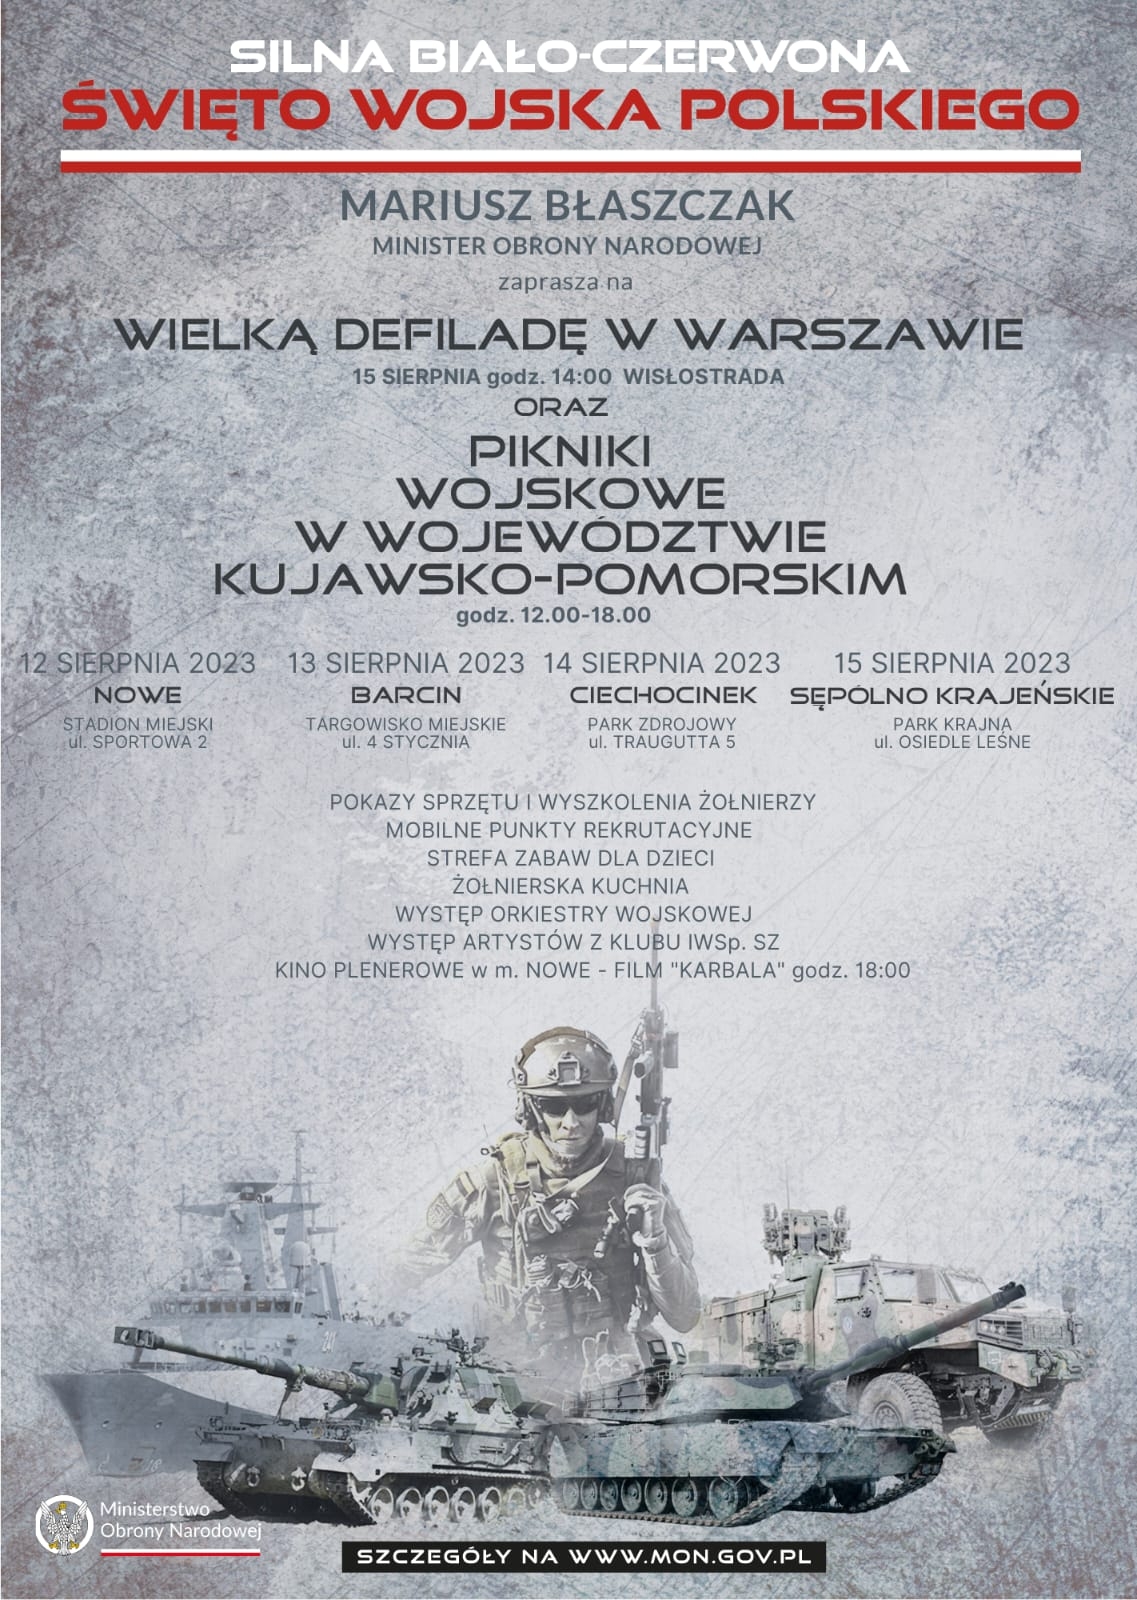 Silna Biało-Czerwona - Święto Wojska Polskiego 